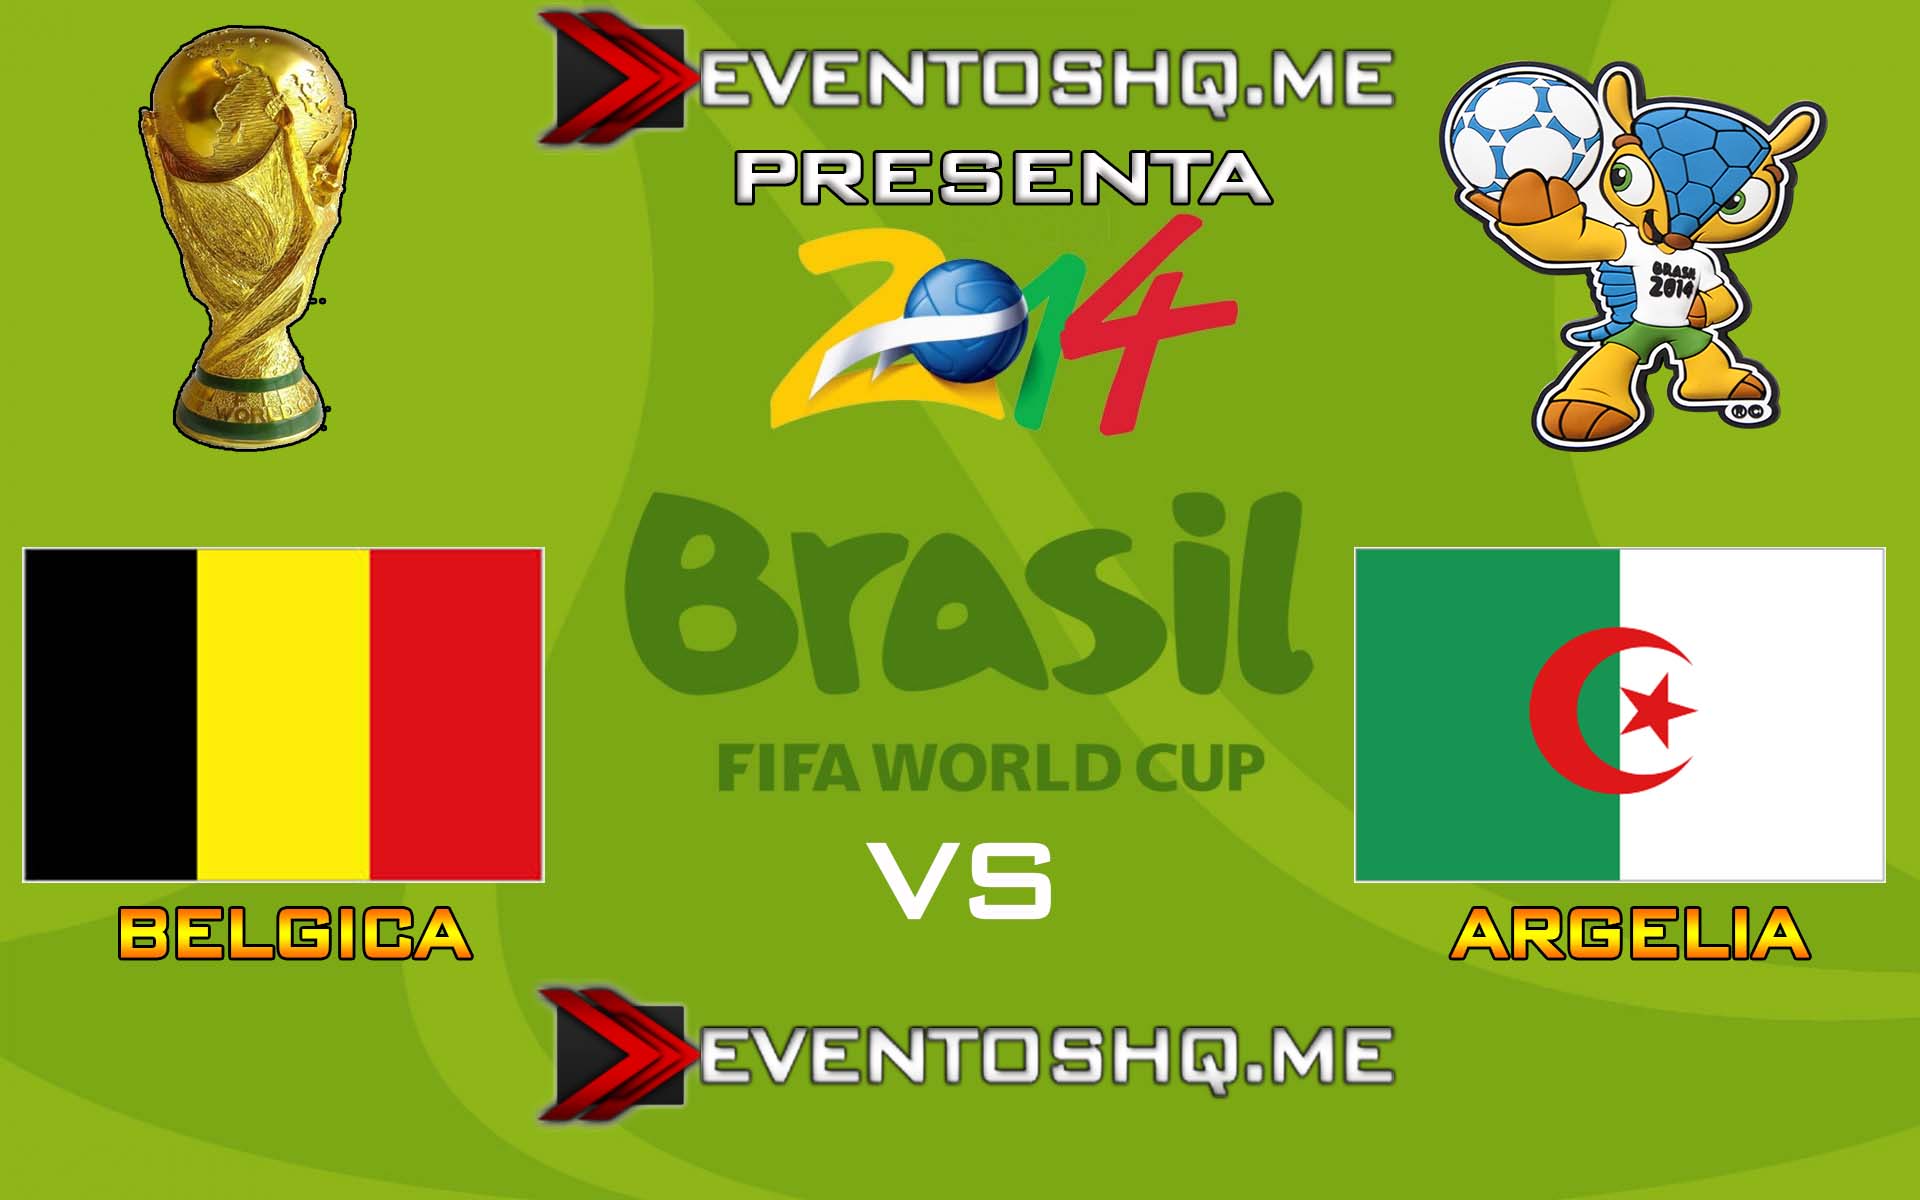 Ver en Vivo Belgica vs Argelia Mundial Brasil 2014 www.eventoshq.me